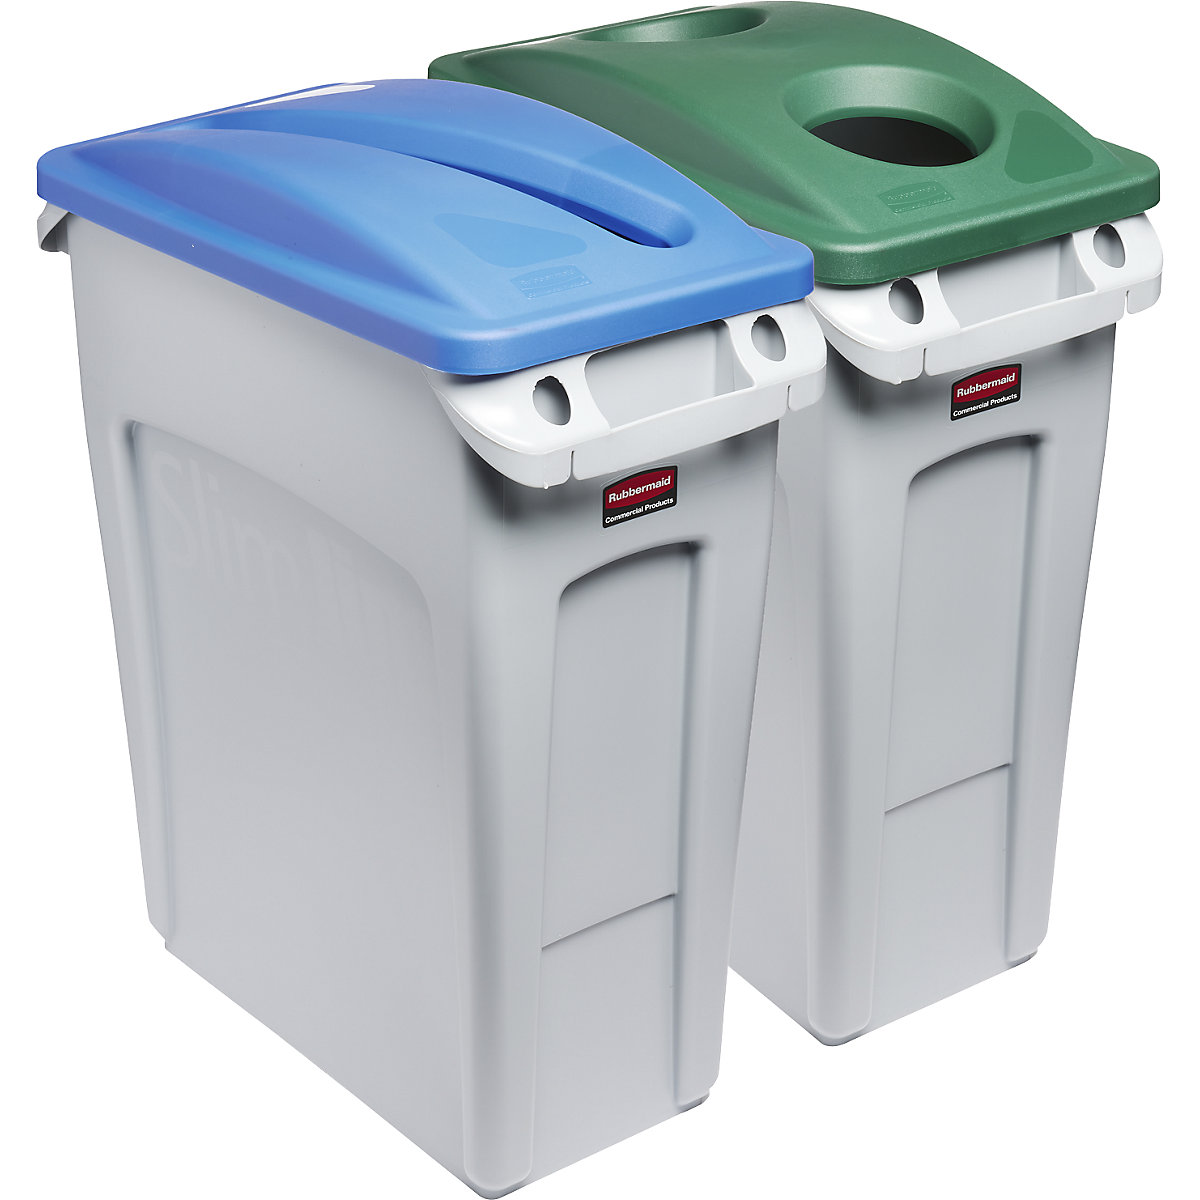 SLIM JIM® szelektív hulladékgyűjtő állomás, 2 darabból álló készlet – Rubbermaid